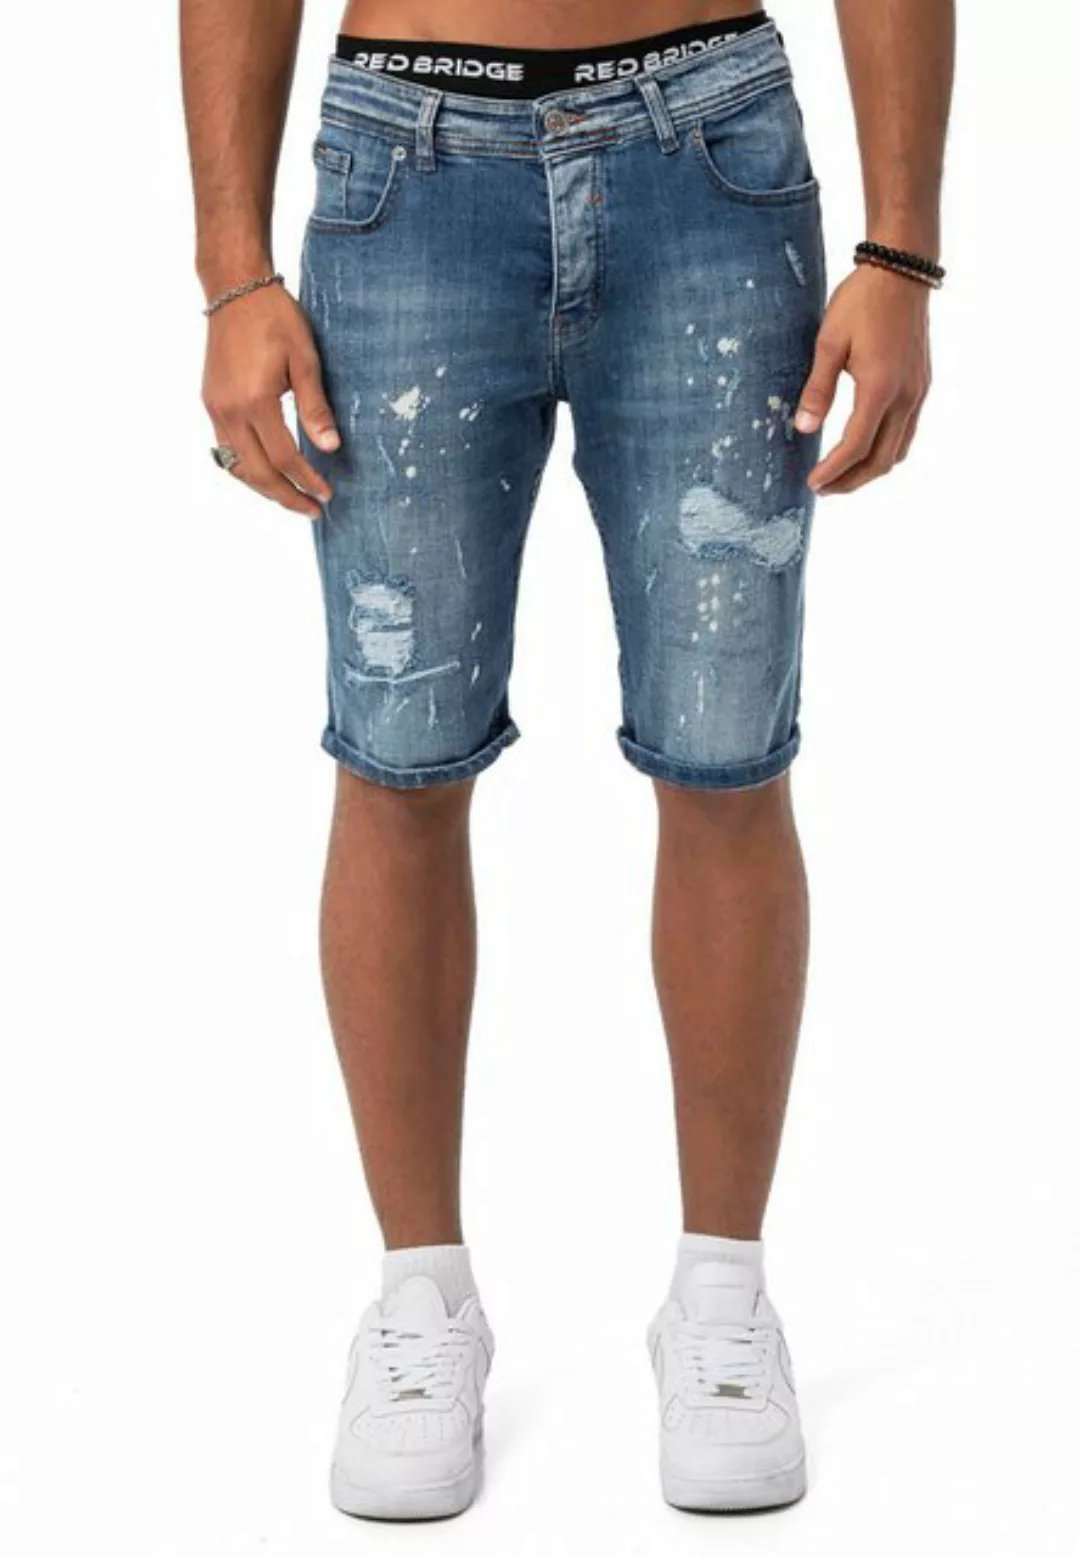 RedBridge Jeansshorts Red Bridge Herren Jeans Shorts Kurze Hose Denim Blau günstig online kaufen